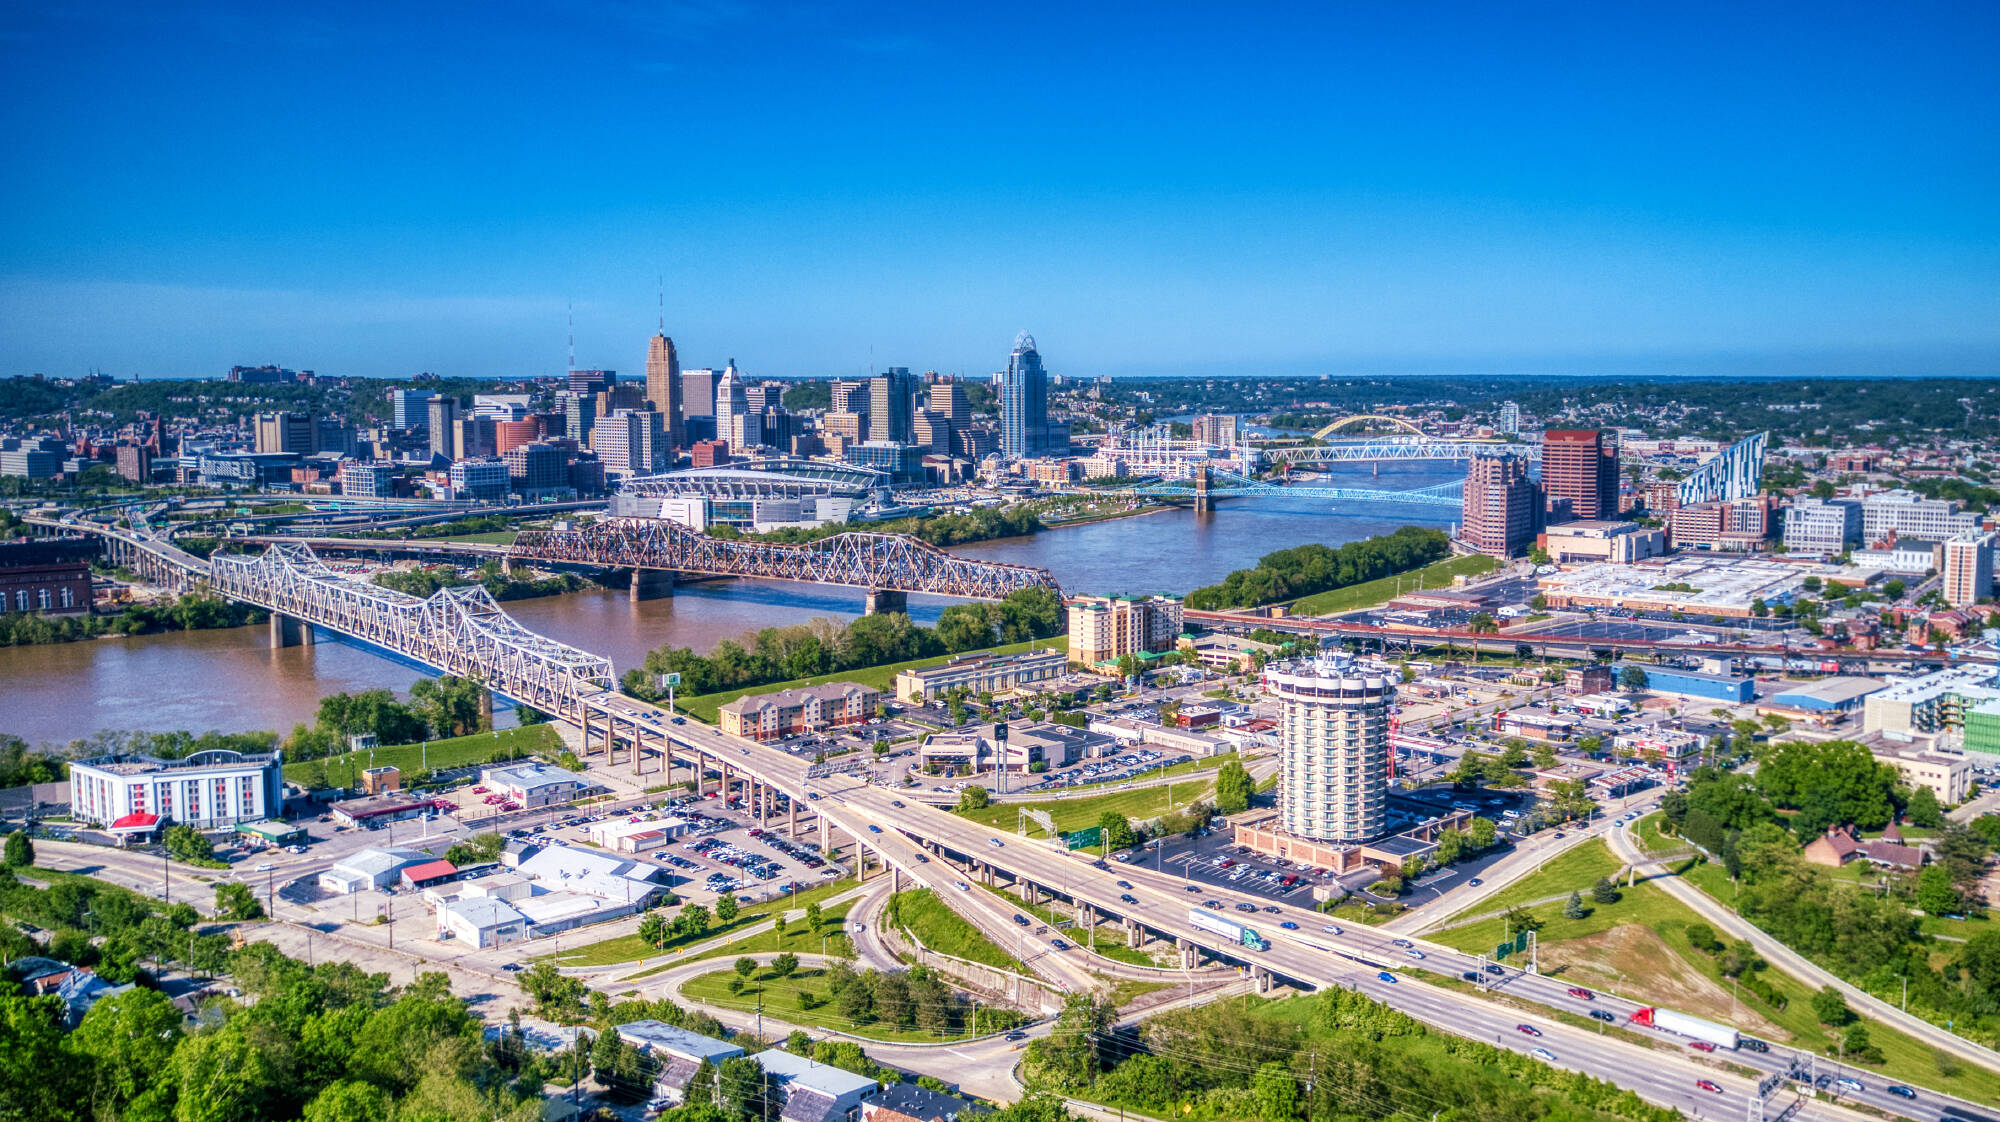 Cincinnati, USA